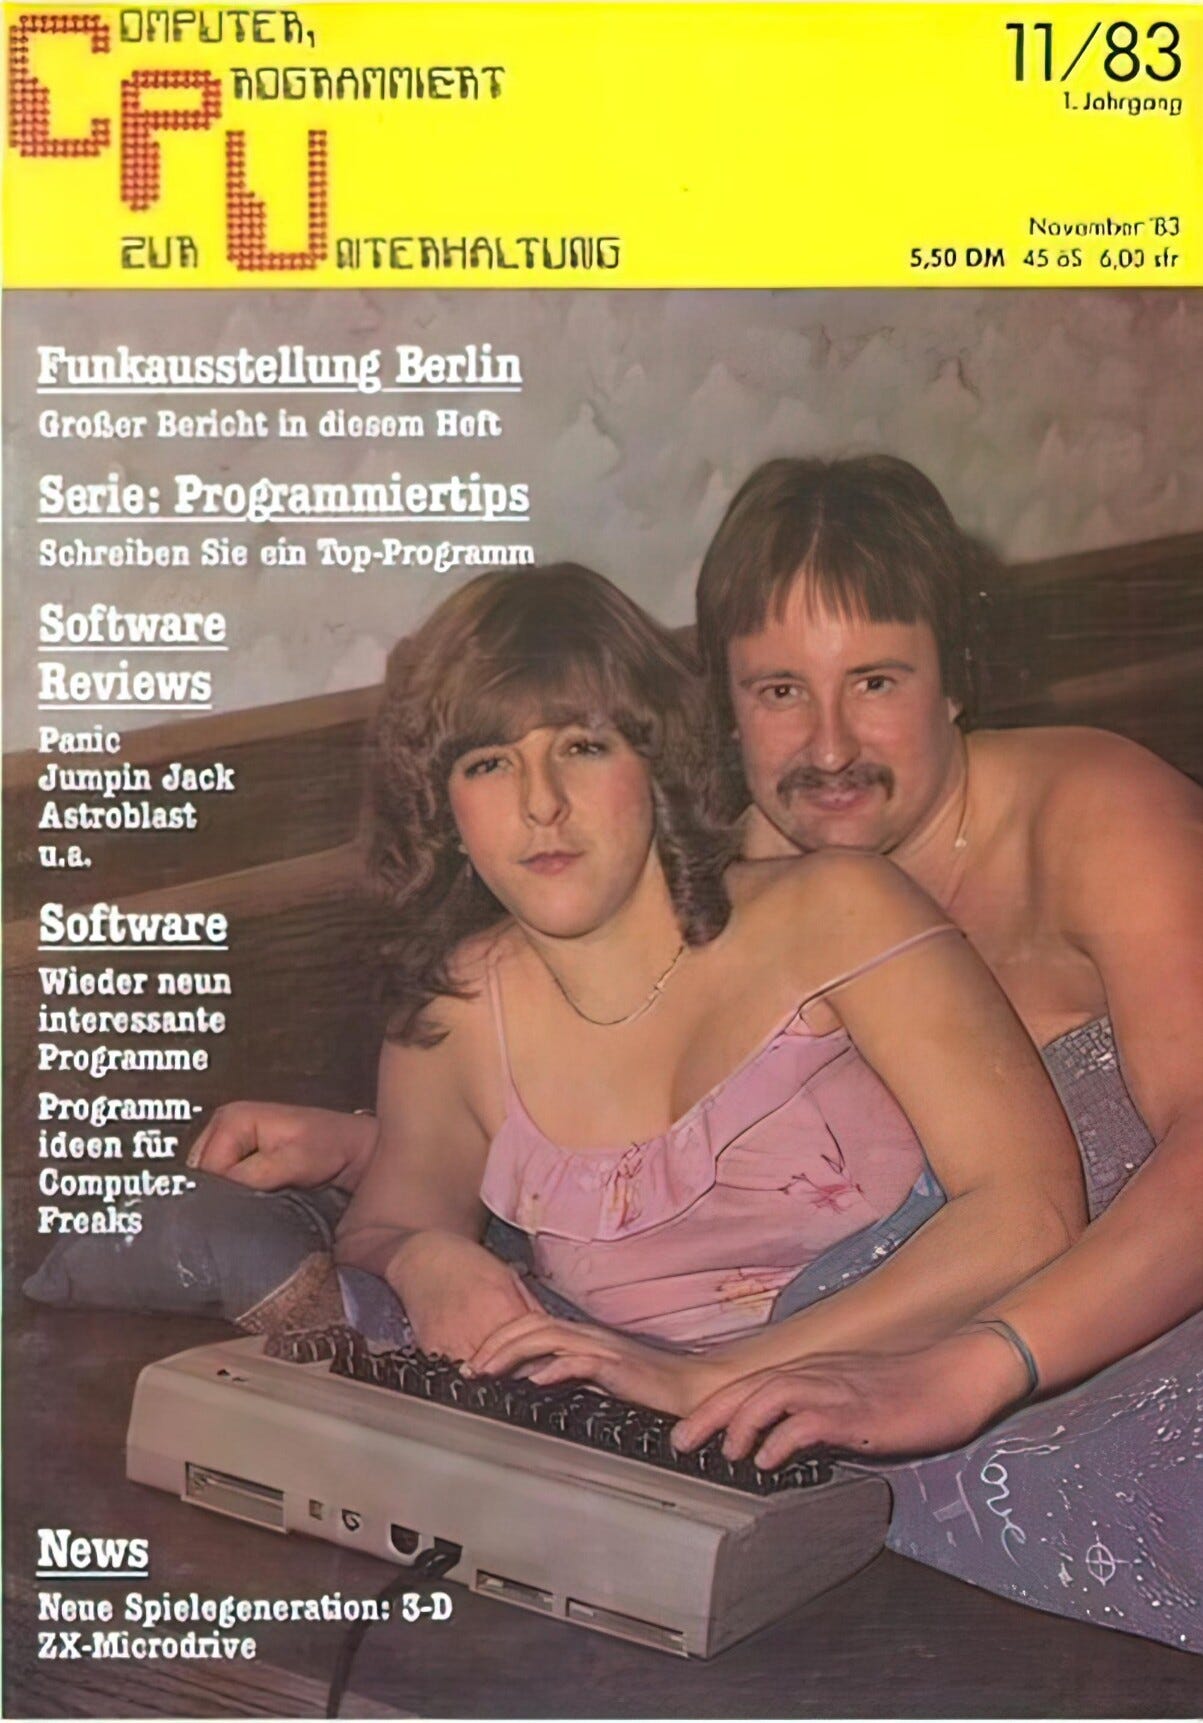 Titelblatt einer alten Computerzeitung, das ein junges Pärchen im Bett liegend zeigt, dass sich gerade einem PC wirmet.